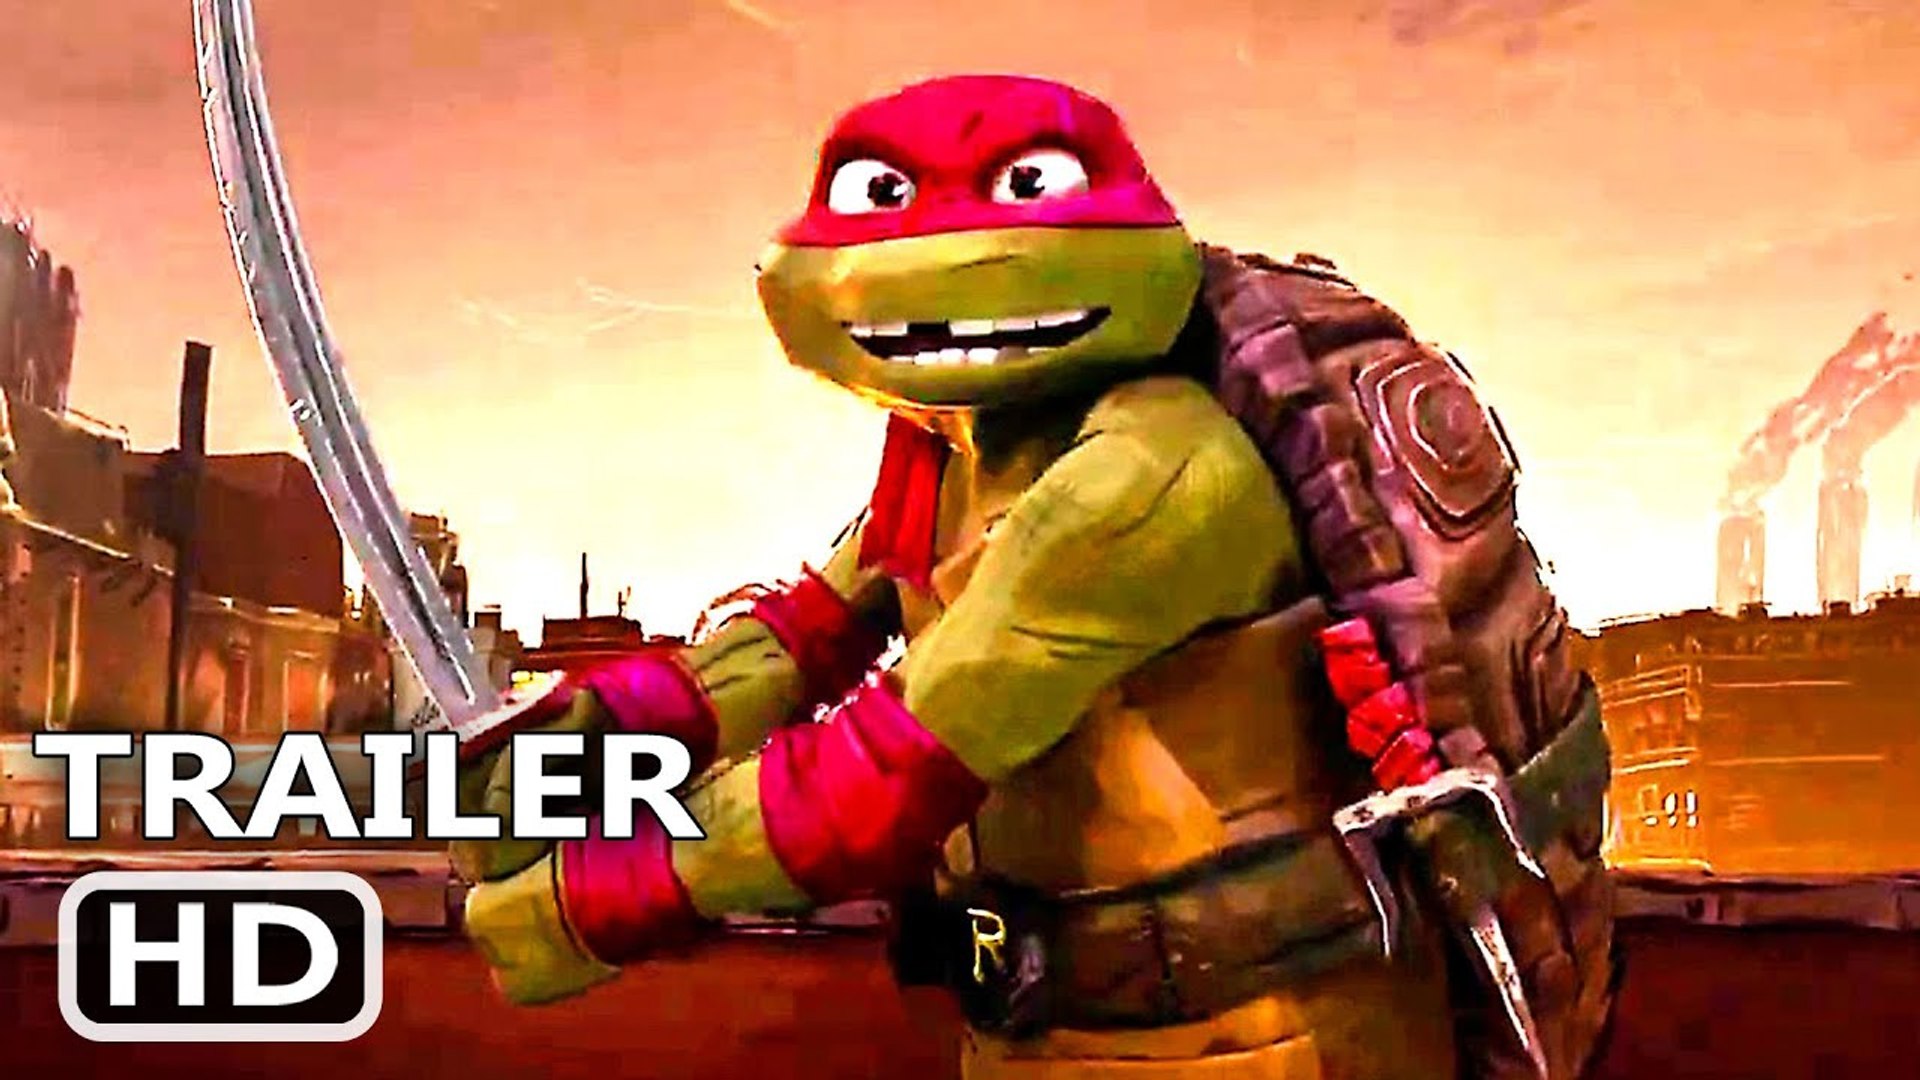 Teenage Mutant Ninja Turtles: Mutant Mayhem  Teaser Trailer (2023 Movie) -  Seth Rogen 